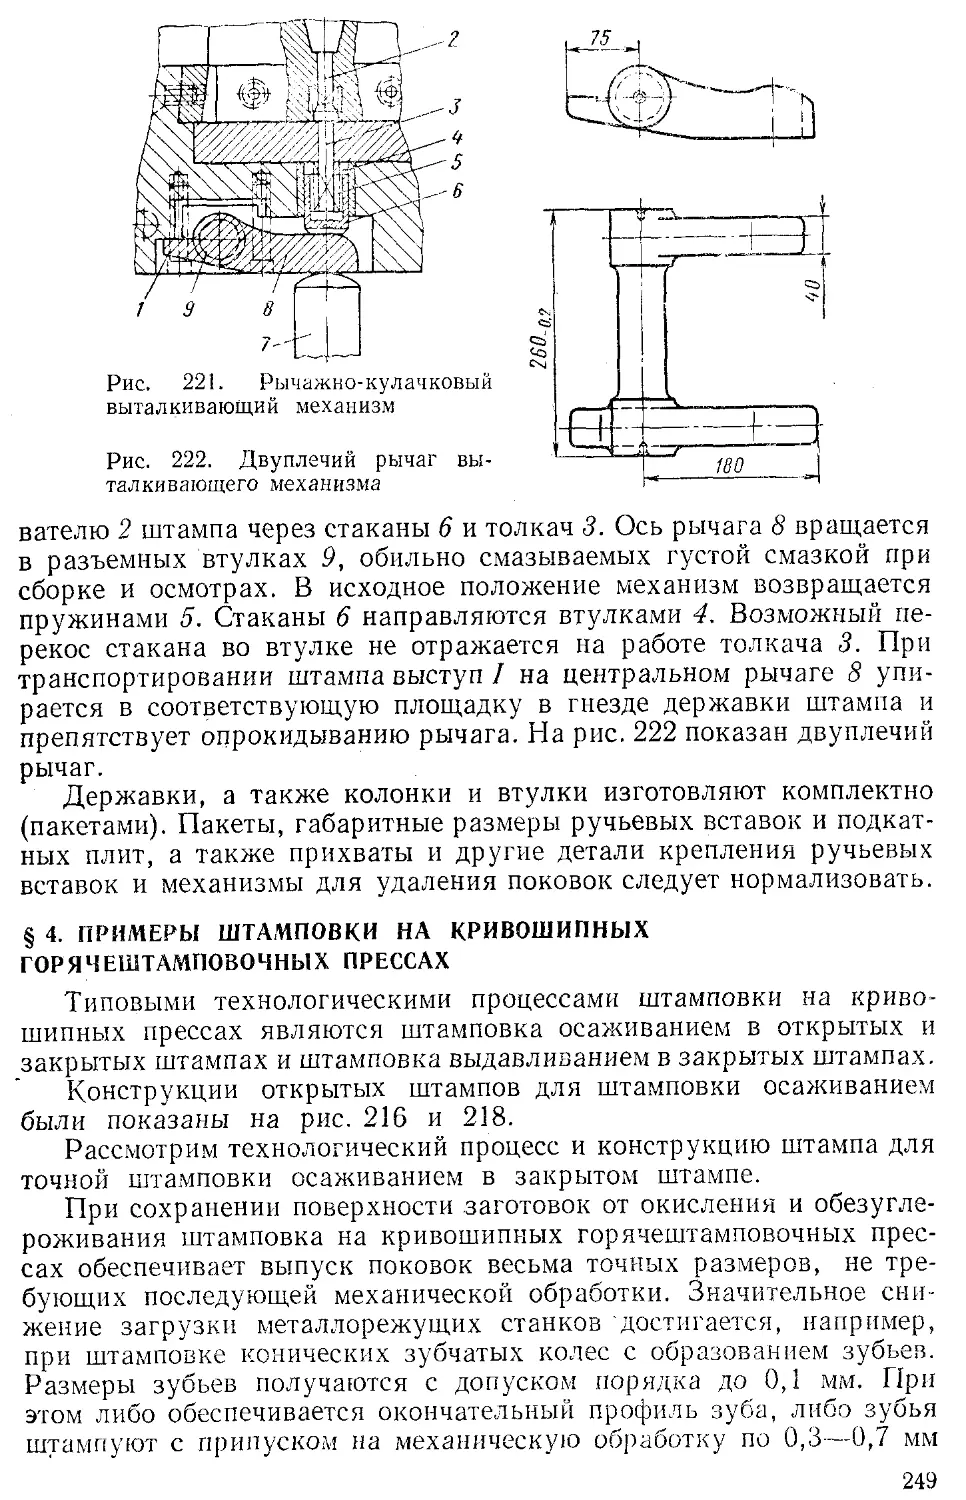 § 4. Примеры штамповки на кривошипных горячештамповочных